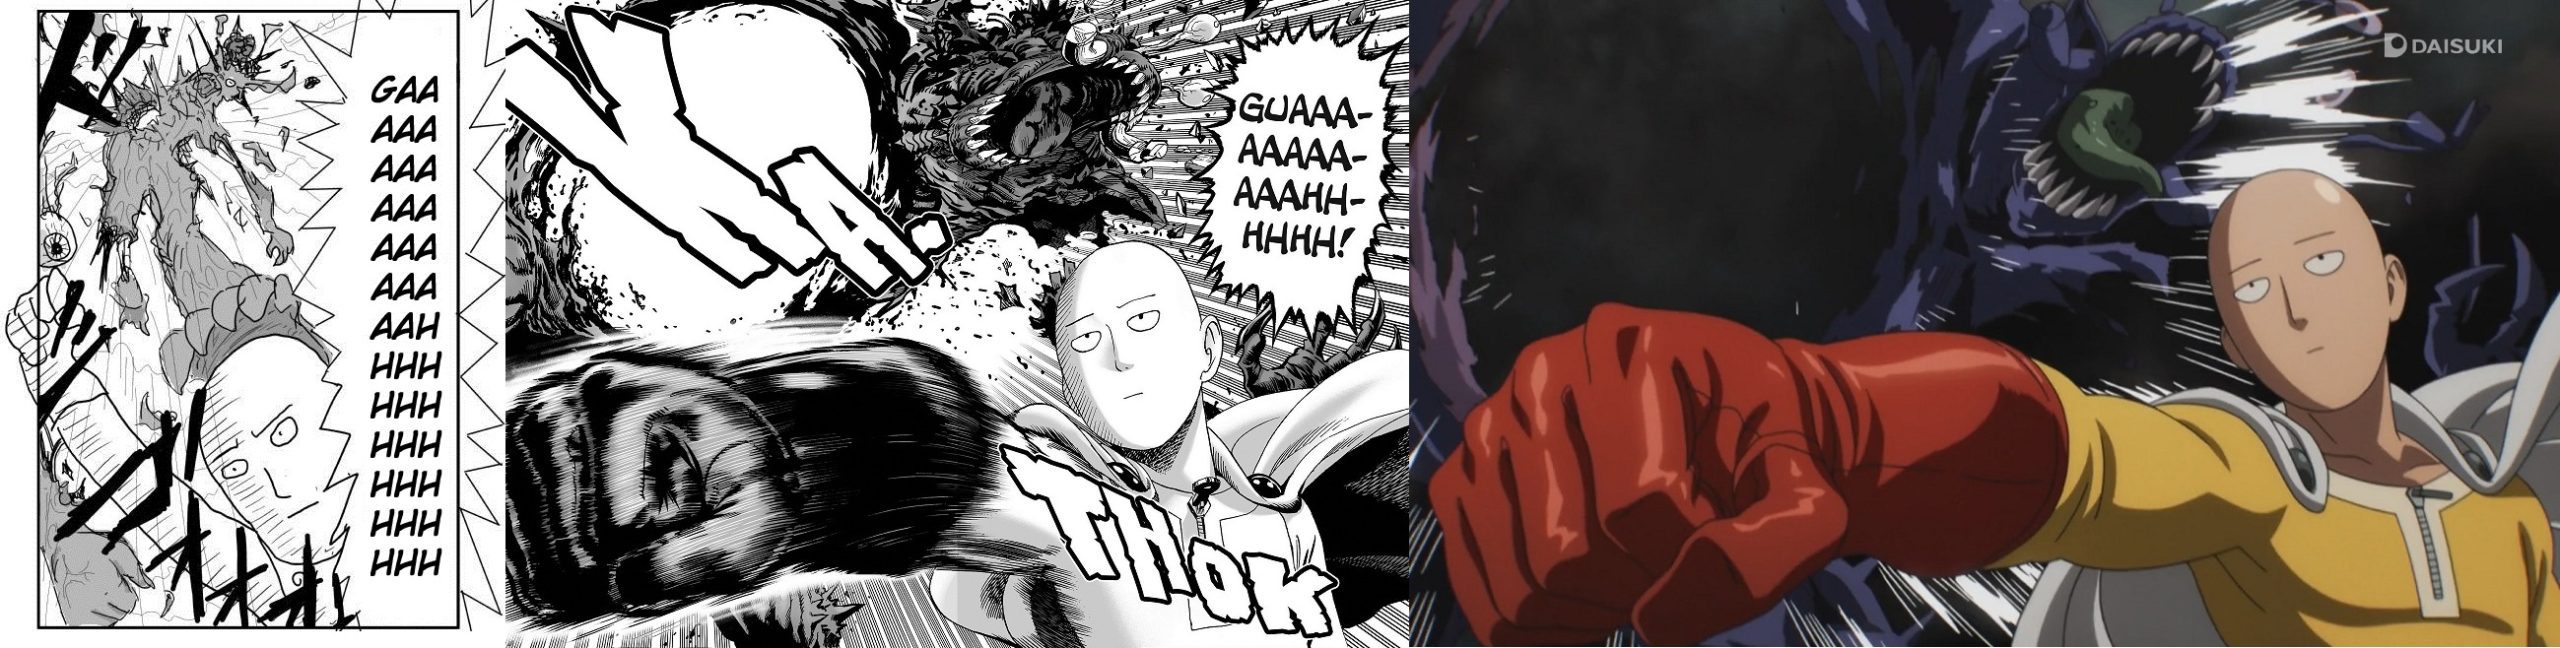 one punch man original manga vs redraw manga vs anime